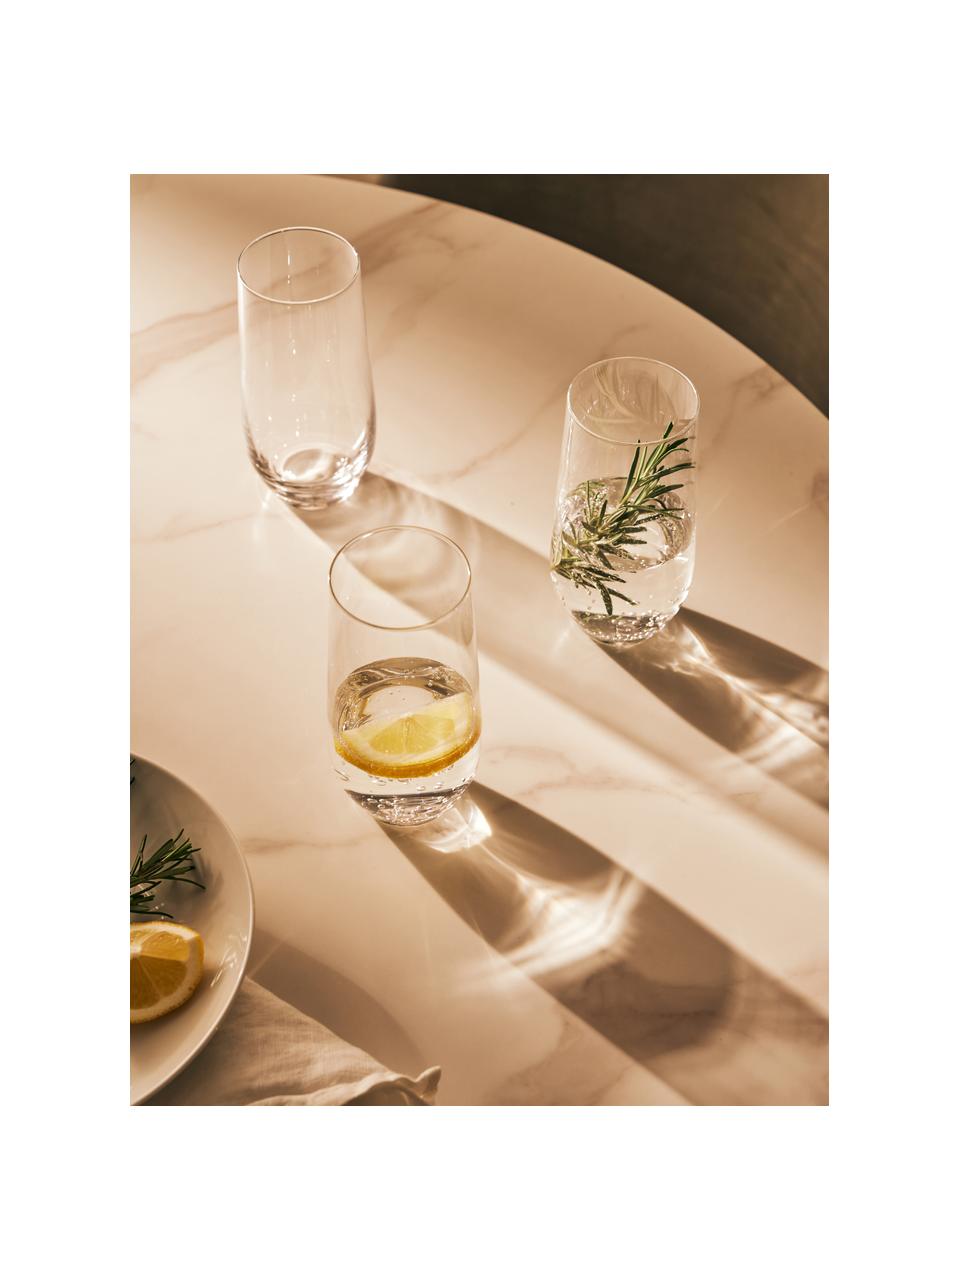 Vysoké křišťálové sklenice Revolution, 6 ks, Křišťál, Transparentní, Ø 7 cm, V 14 cm, 360 ml